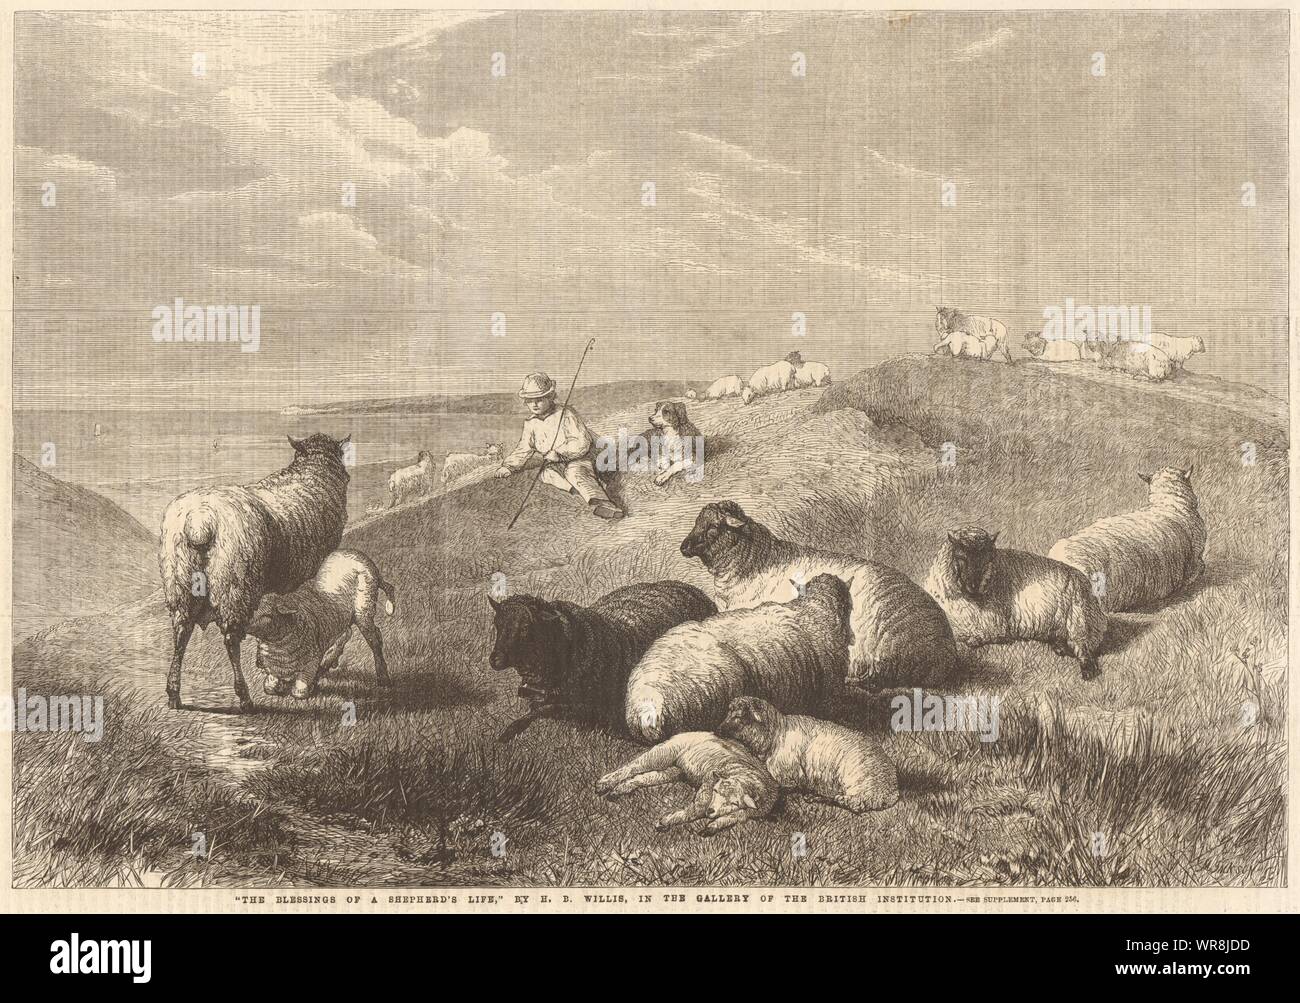 "La benedizione di un pastore la vita" di H. B. Willis. Agricoltura. Pecore 1862 Foto Stock